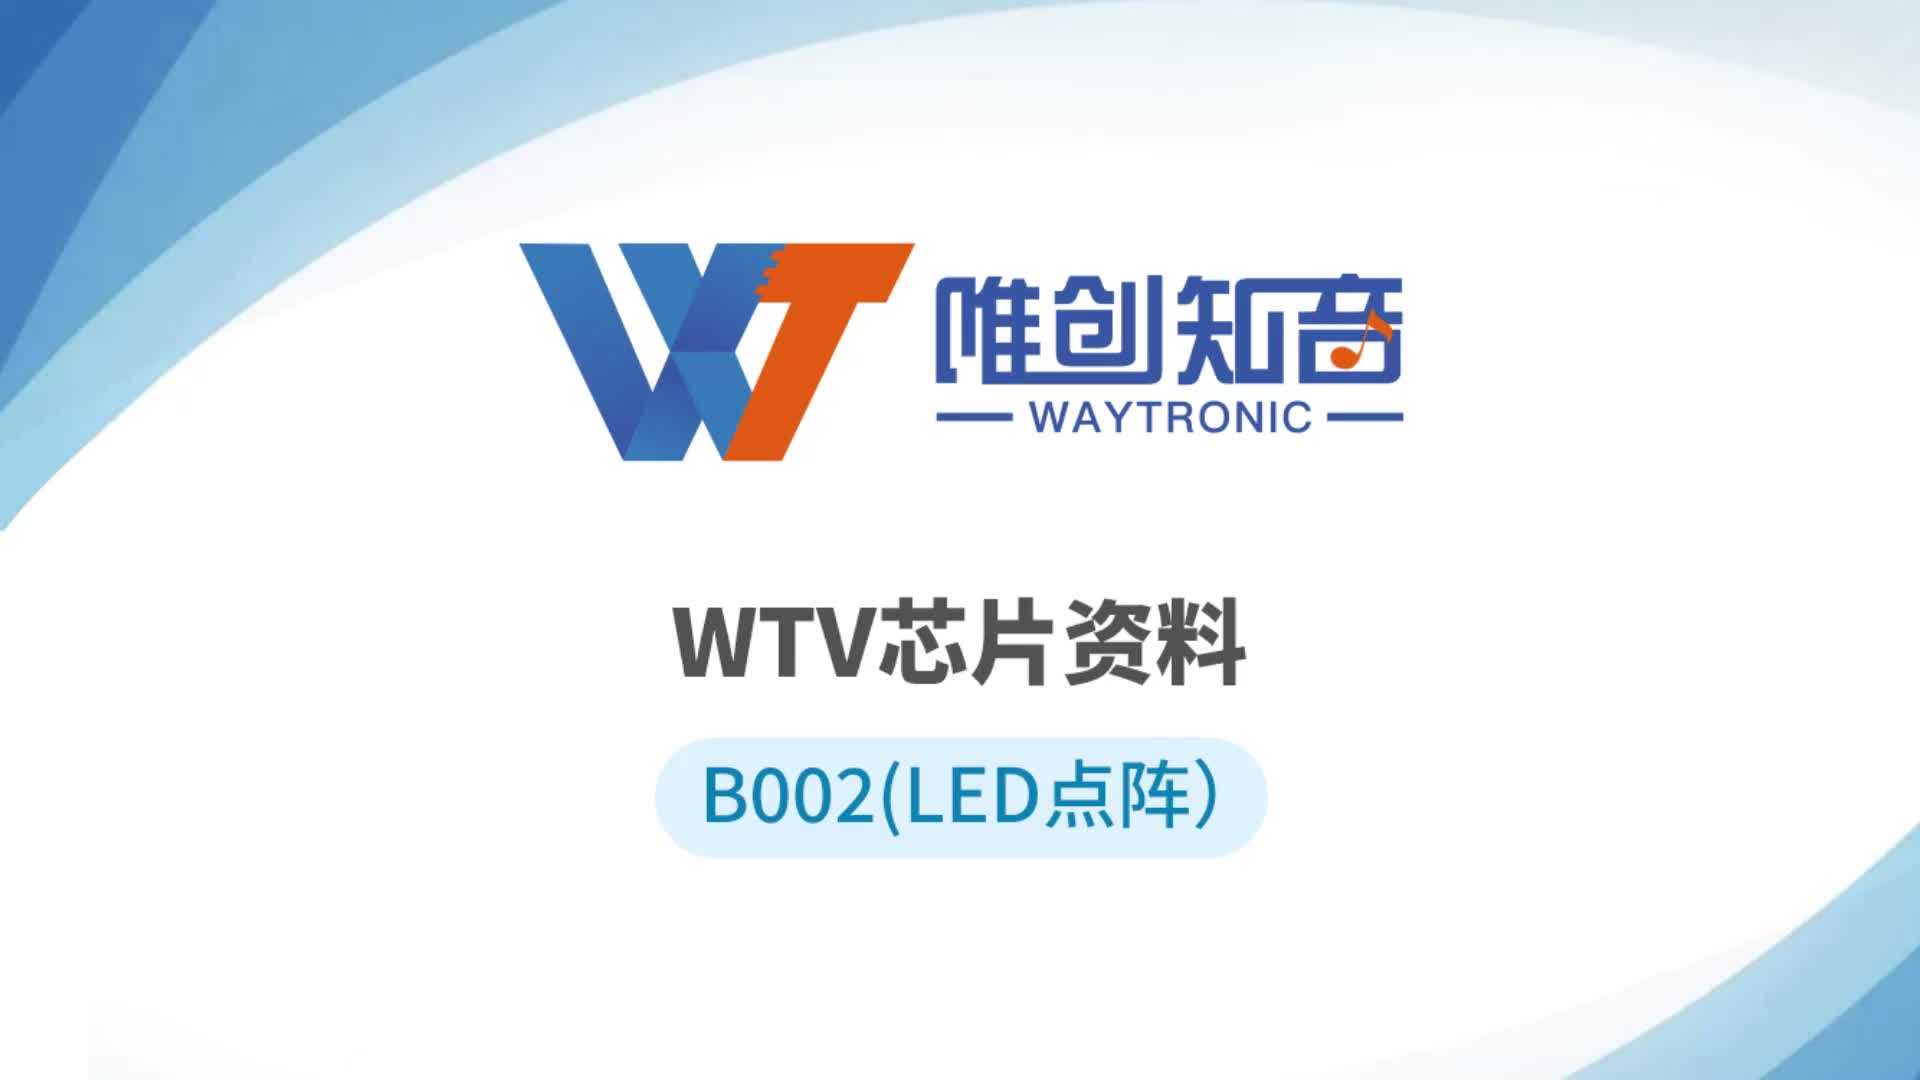 WTV系列语音芯片，单芯片可驱动LED点阵+语音播报功能#语音芯片 #音频芯片 #LED点阵 